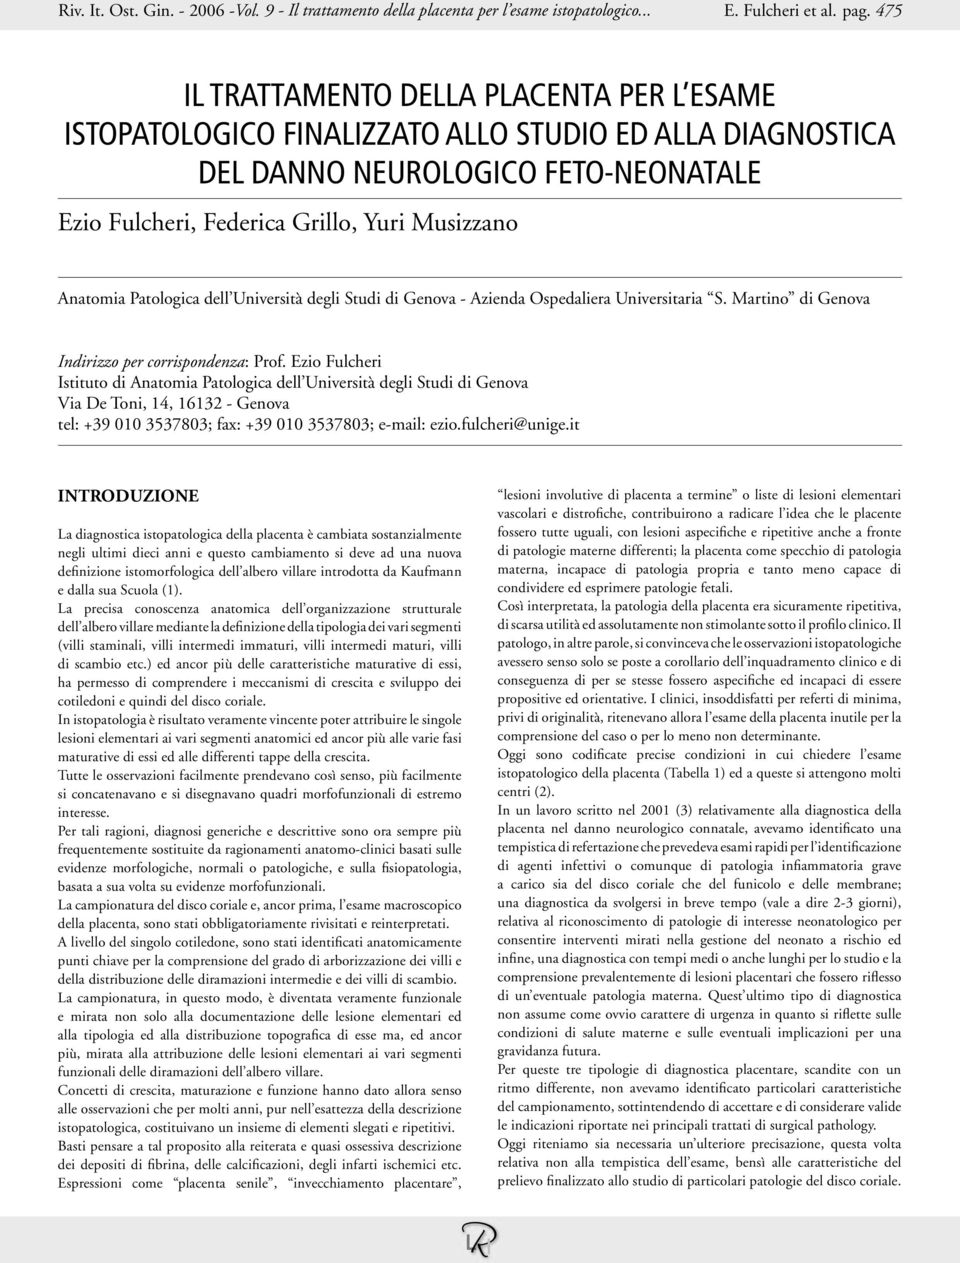 Patologica dell Università degli Studi di Genova - Azienda Ospedaliera Universitaria S. Martino di Genova Indirizzo per corrispondenza: Prof.